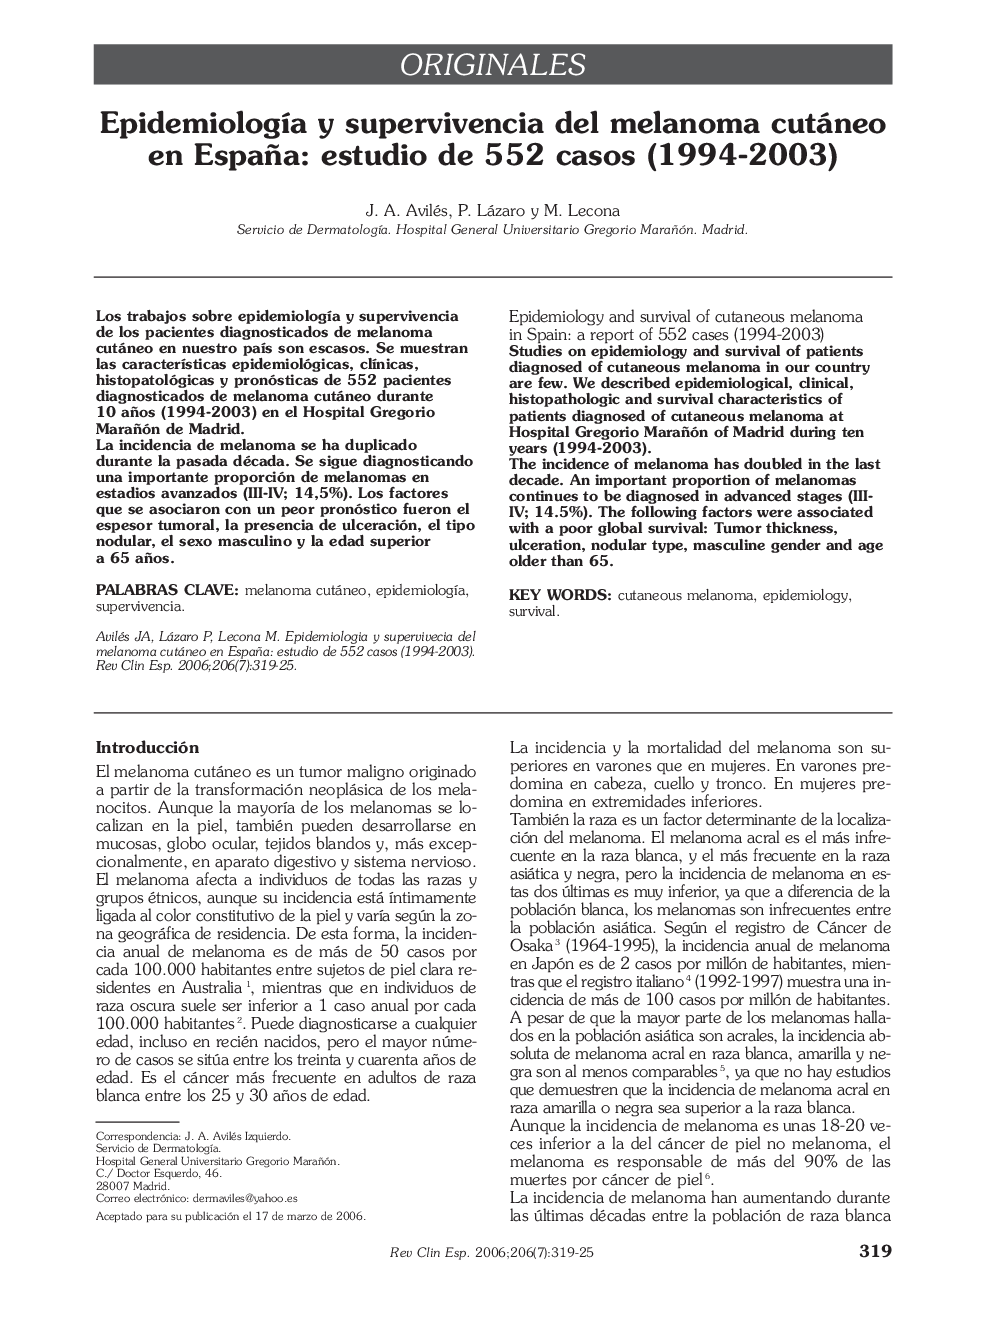 OriginalesEpidemiologÃ­a y supervivencia del melanoma cutáneo en España: estudio de 552 casos (1994-2003)Epidemiology and survival of cutaneous melanoma in Spain: a report of 552 cases (1994-2003)